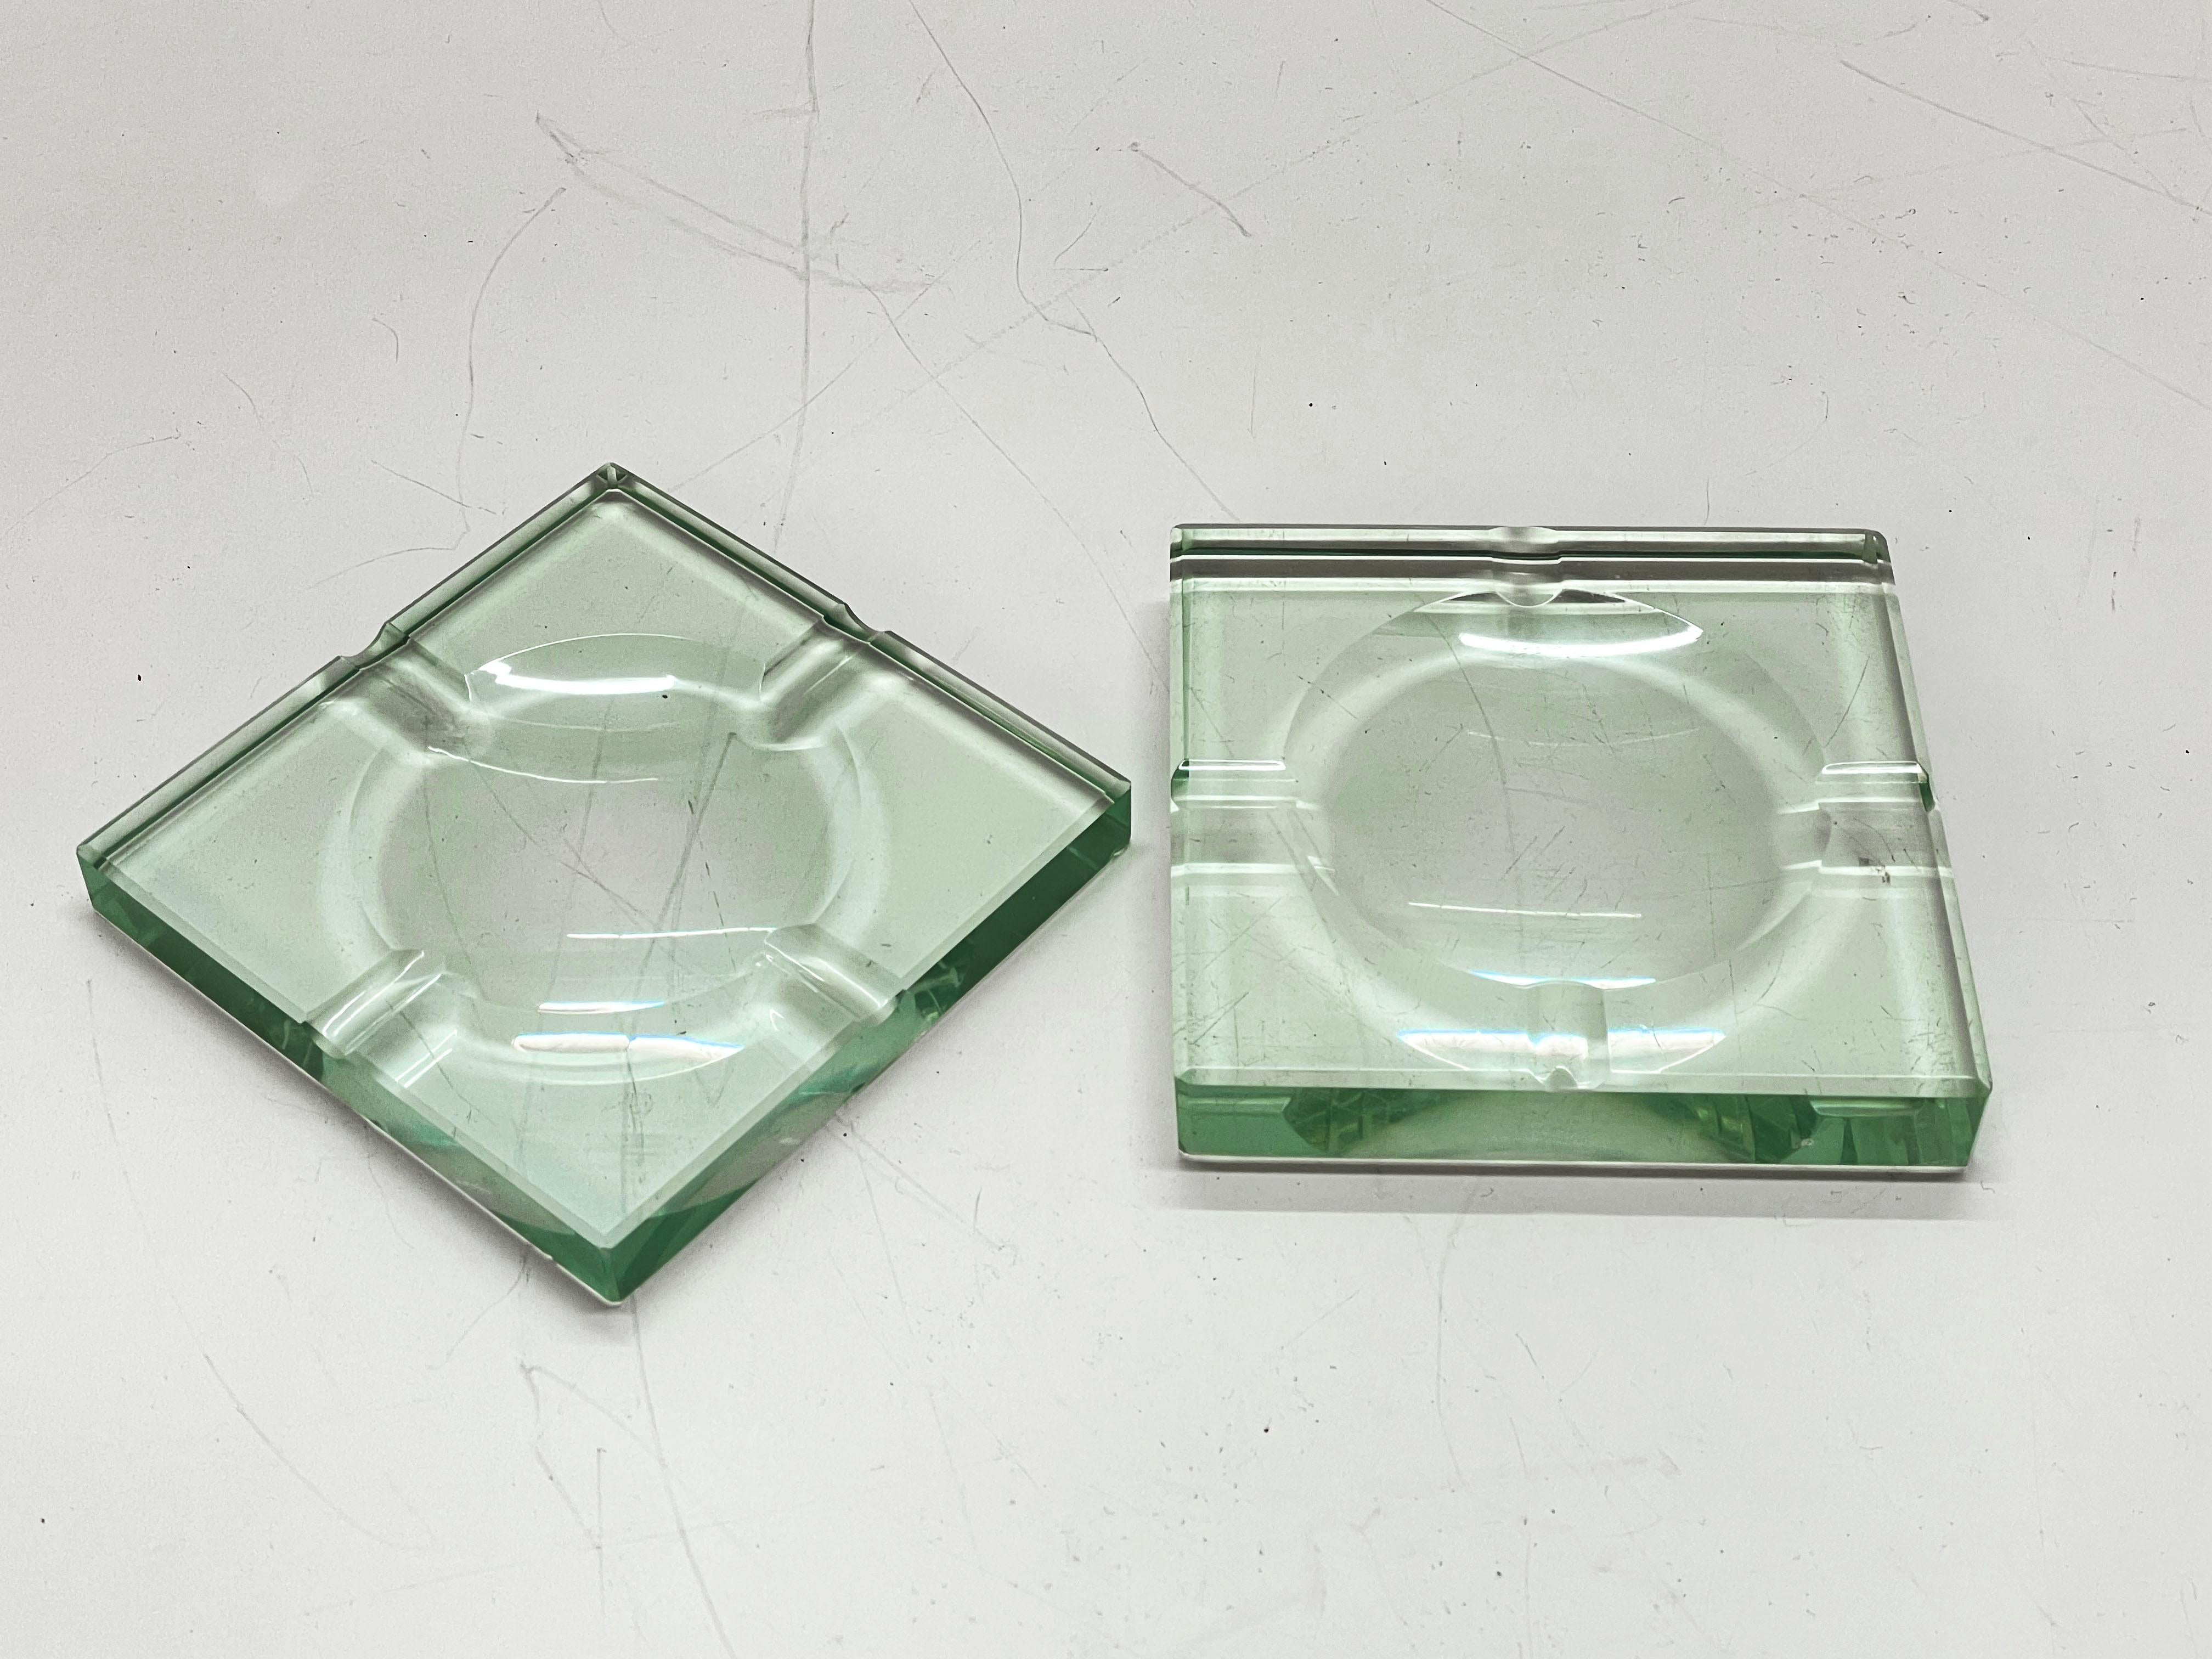 Deux incroyables cendriers carrés en verre vert du milieu du siècle dernier. Ces magnifiques pièces ont été produites par Fontana Arte en Italie dans les années 1960.

Les articles sont en cristal carré vert avec une sculpture géométrique, le